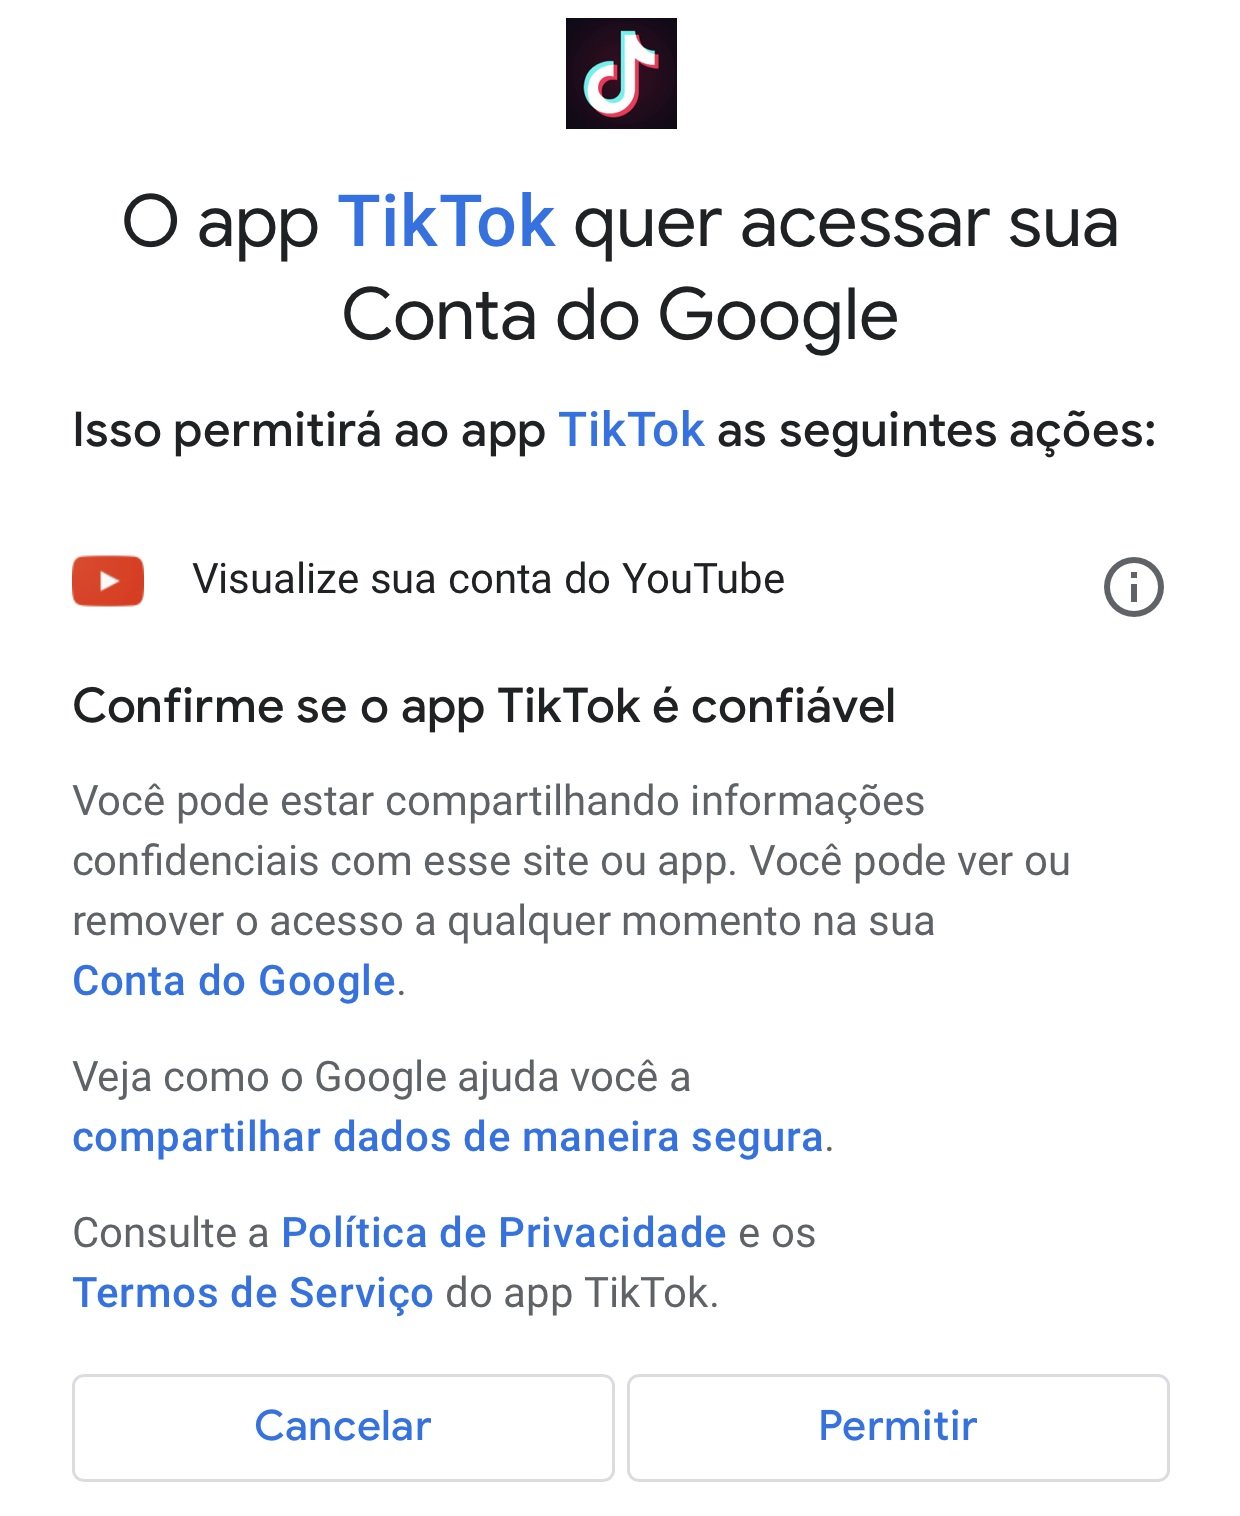 É preciso autorizar o TikTok na sua conta Google para que o link seja criado para o seu canal no YouTube